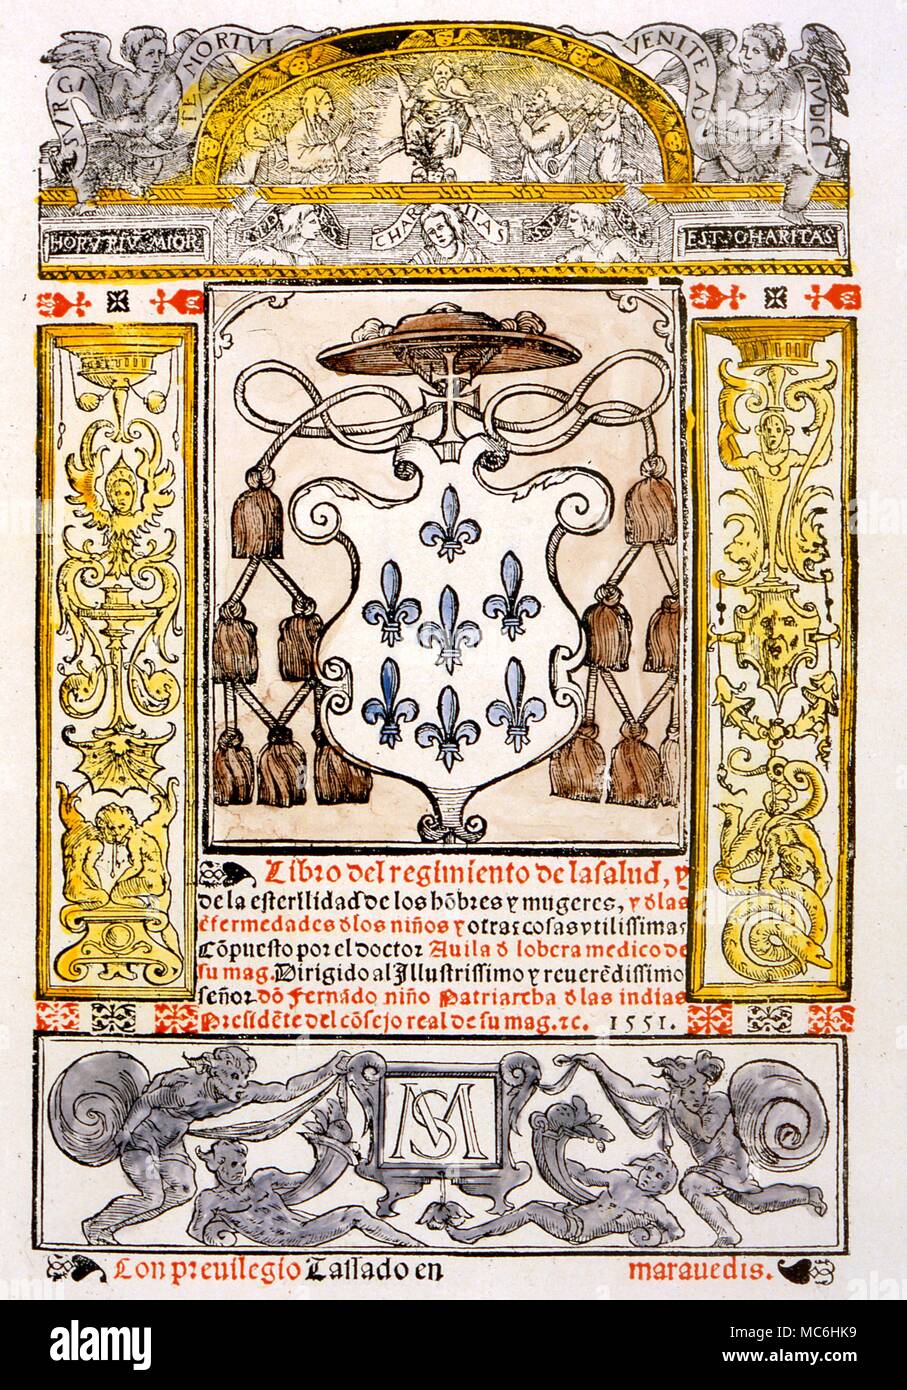 Pagina del titolo di un rarissimo libro spagnolo "Libro del Regimento de la Salud'' 1551. Si tratta di salute e la sterilità di adulti e malattie infantili.". Foto Stock